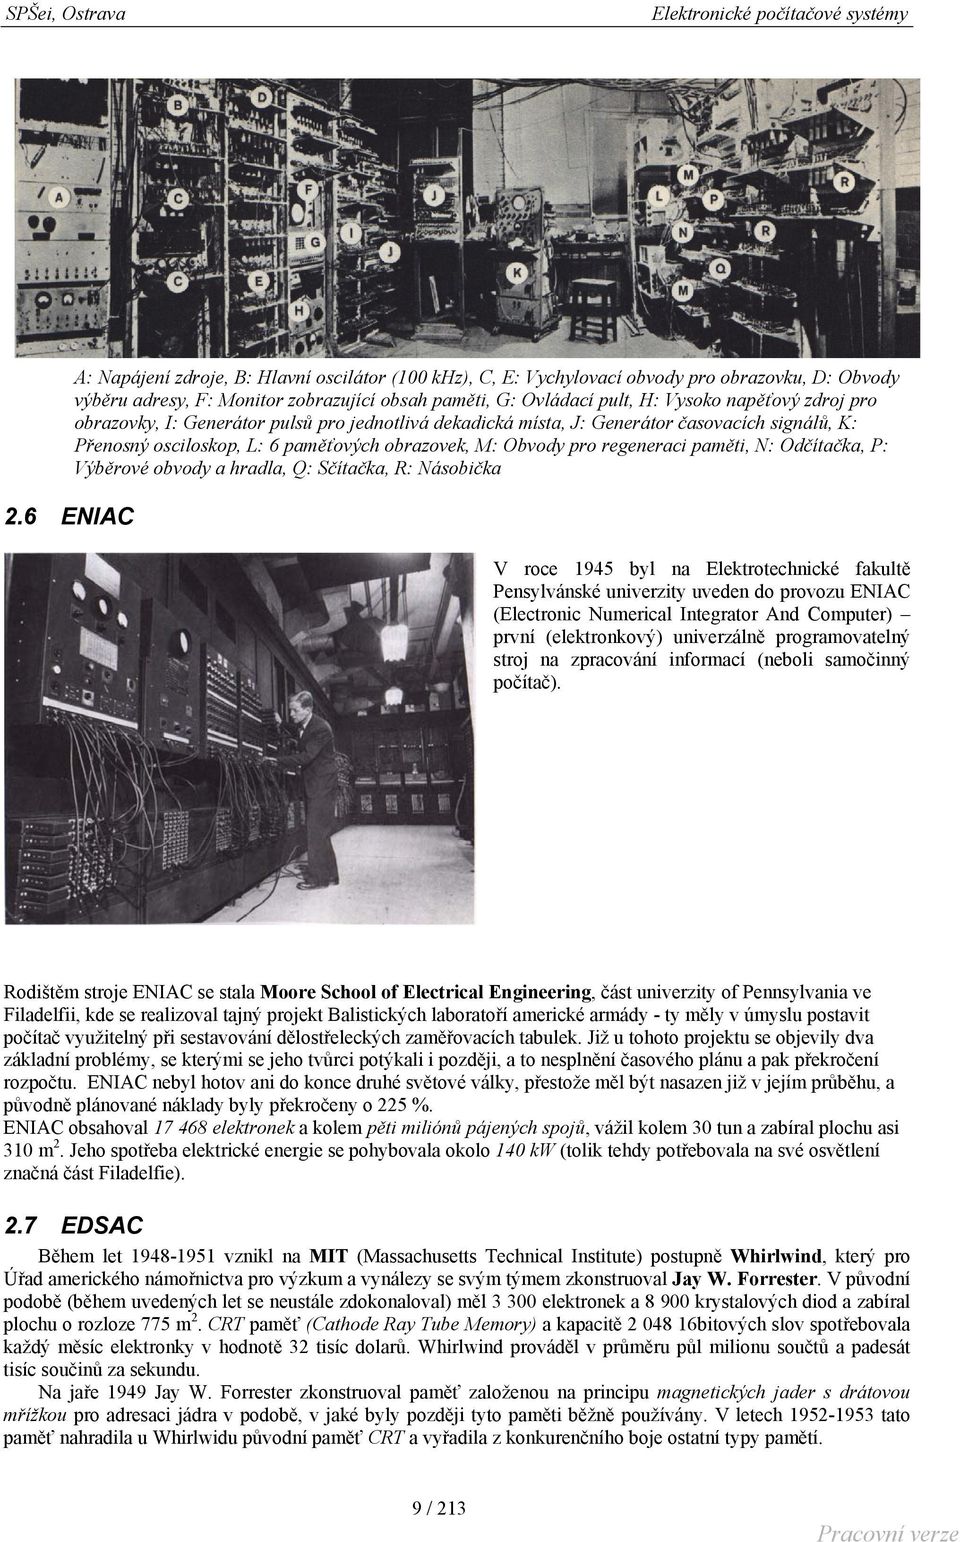 Odčítačka, P: Výběrové obvody a hradla, Q: Sčítačka, R: Násobička V roce 1945 byl na Elektrotechnické fakultě Pensylvánské univerzity uveden do provozu ENIAC (Electronic Numerical Integrator And